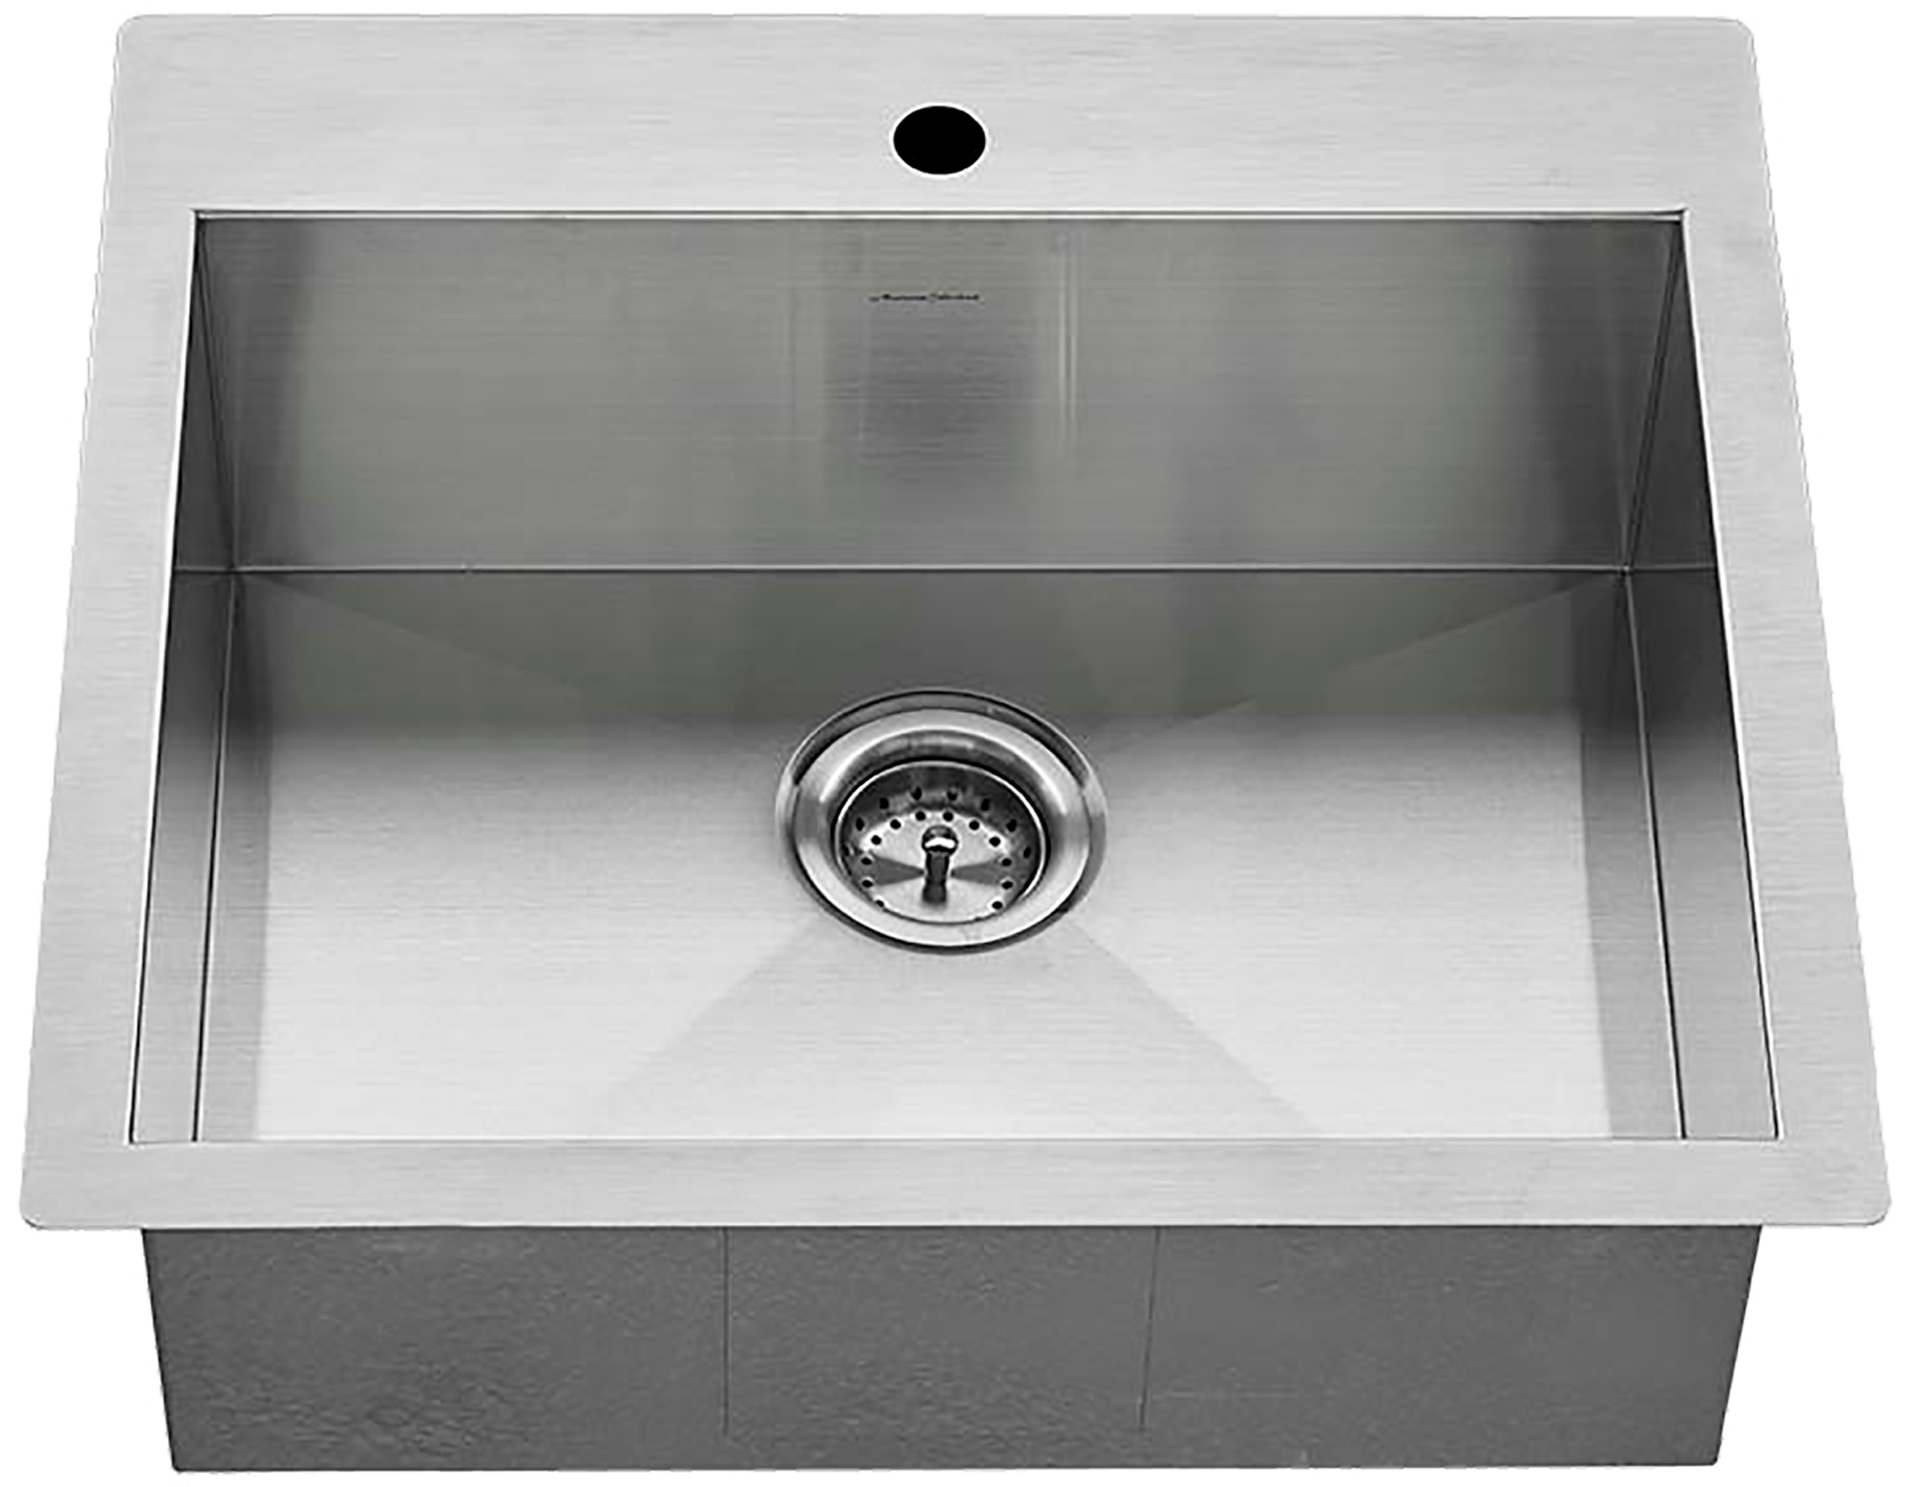 stainless steel kitchen sink 23 x 32 frame